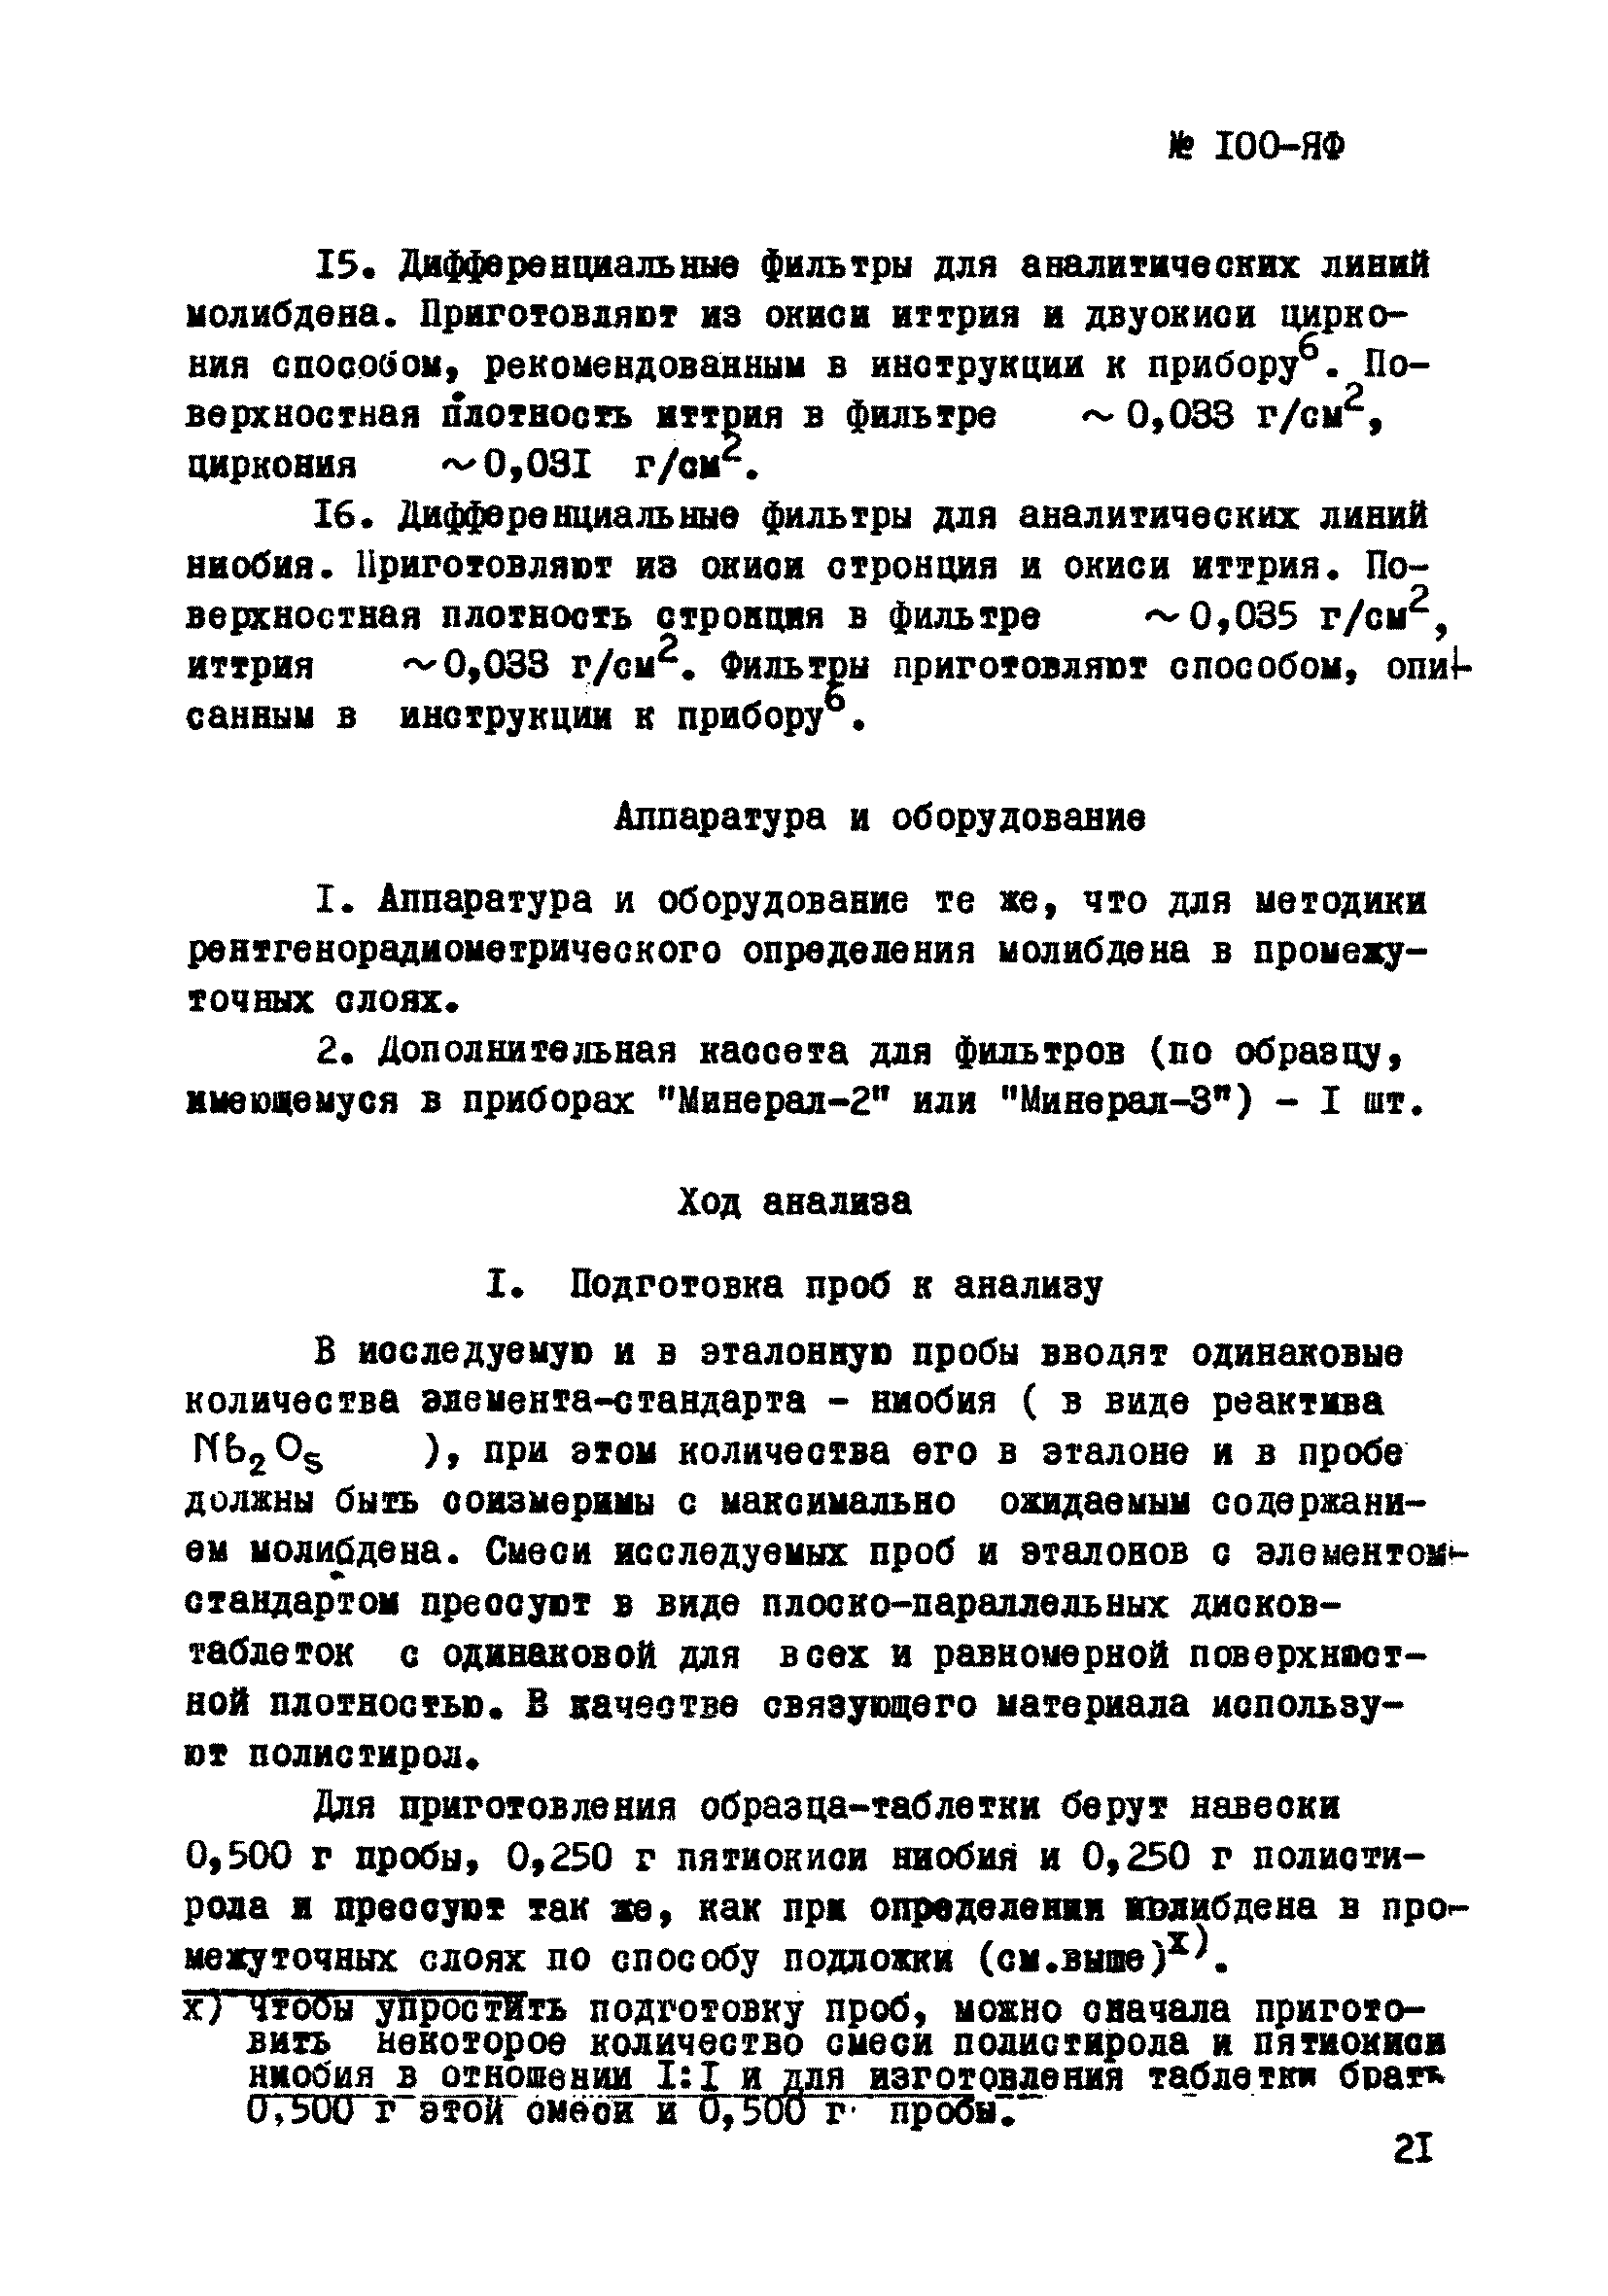 Инструкция НСАМ 100-ЯФ